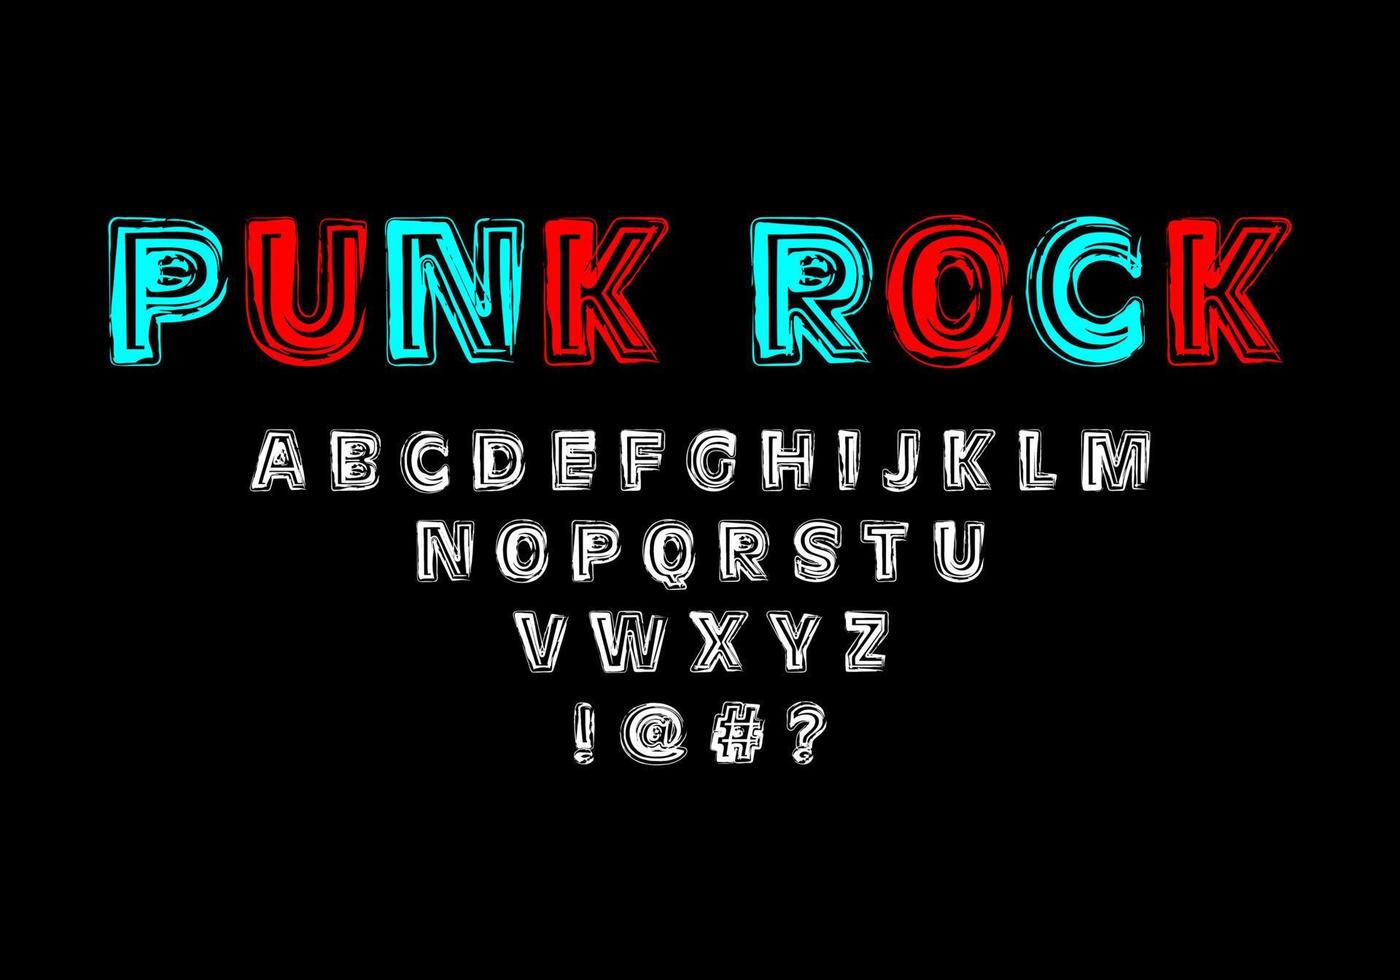 fet stil med grov linjestruktur med punkrock-tema. vektorteckensnitt för typografi, titlar, affischer eller logotyper vektor